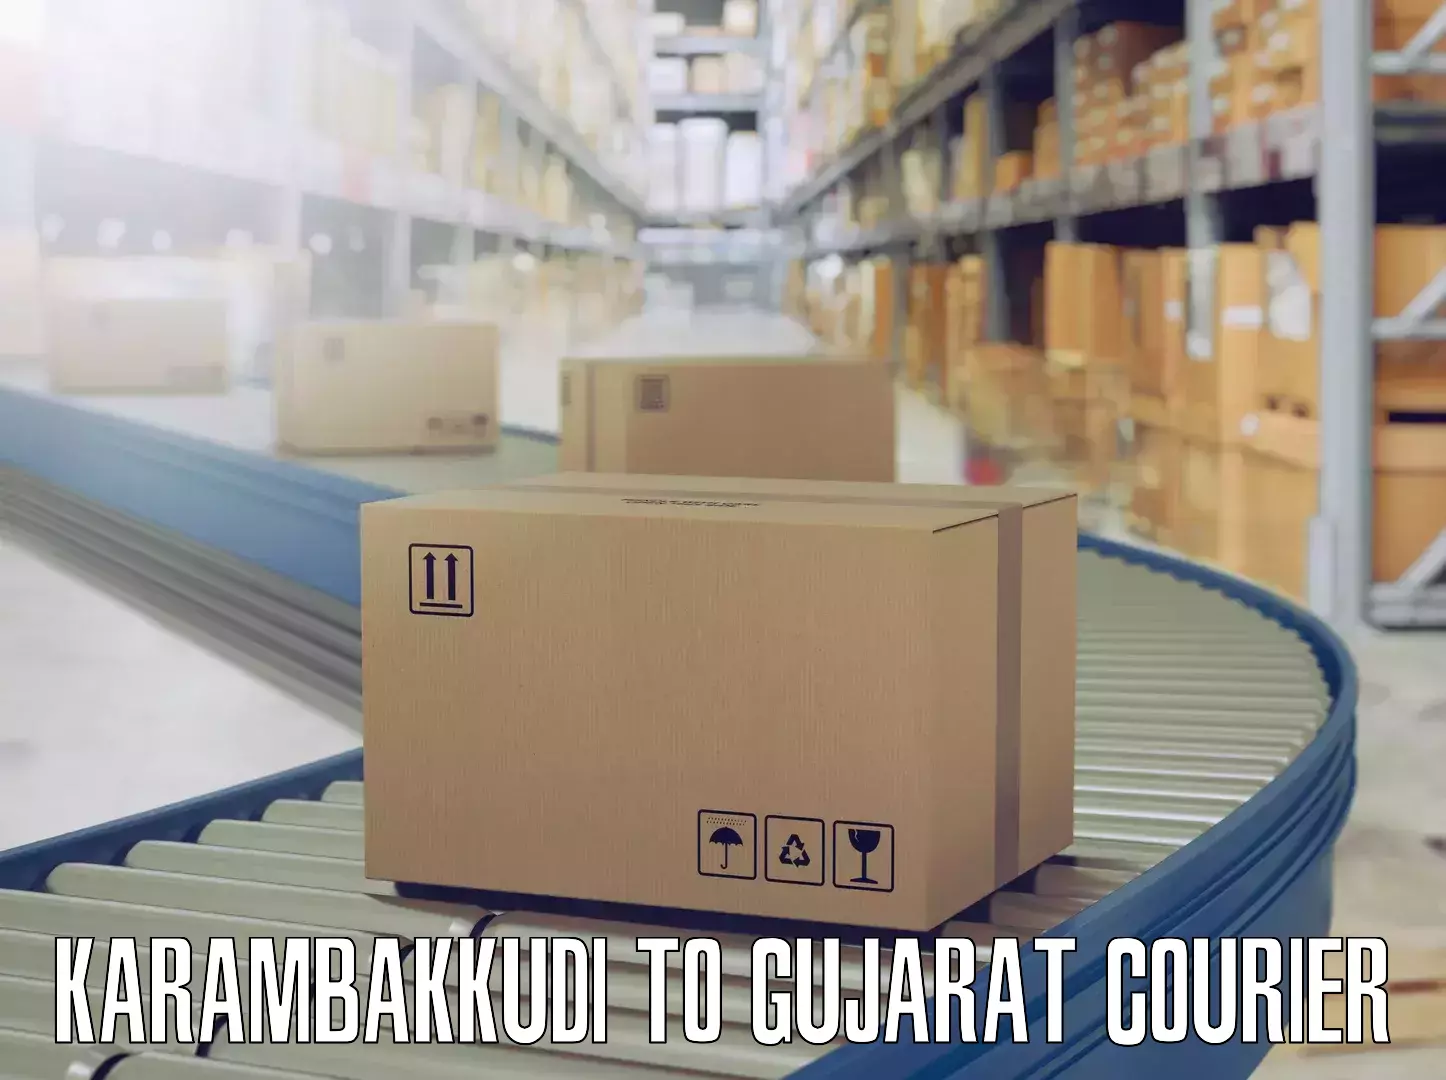 Tailored moving services Karambakkudi to Gujarat